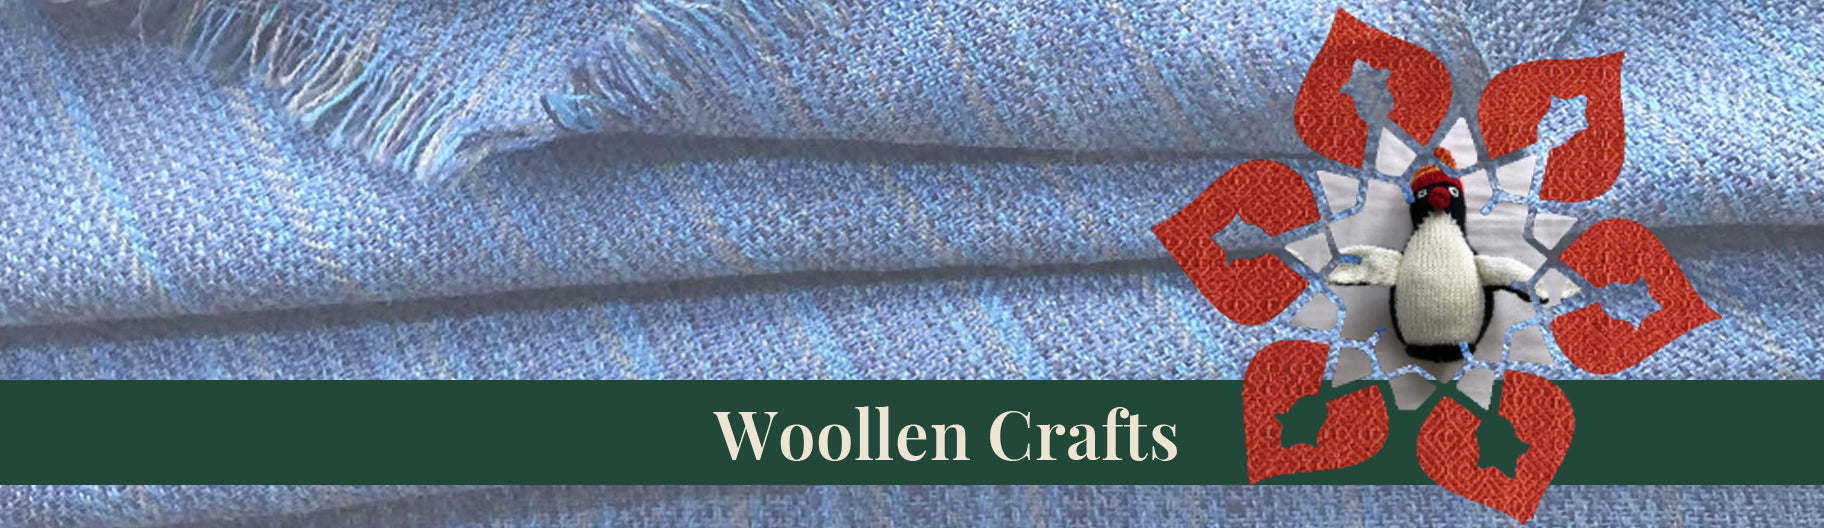 Woollen Crafts